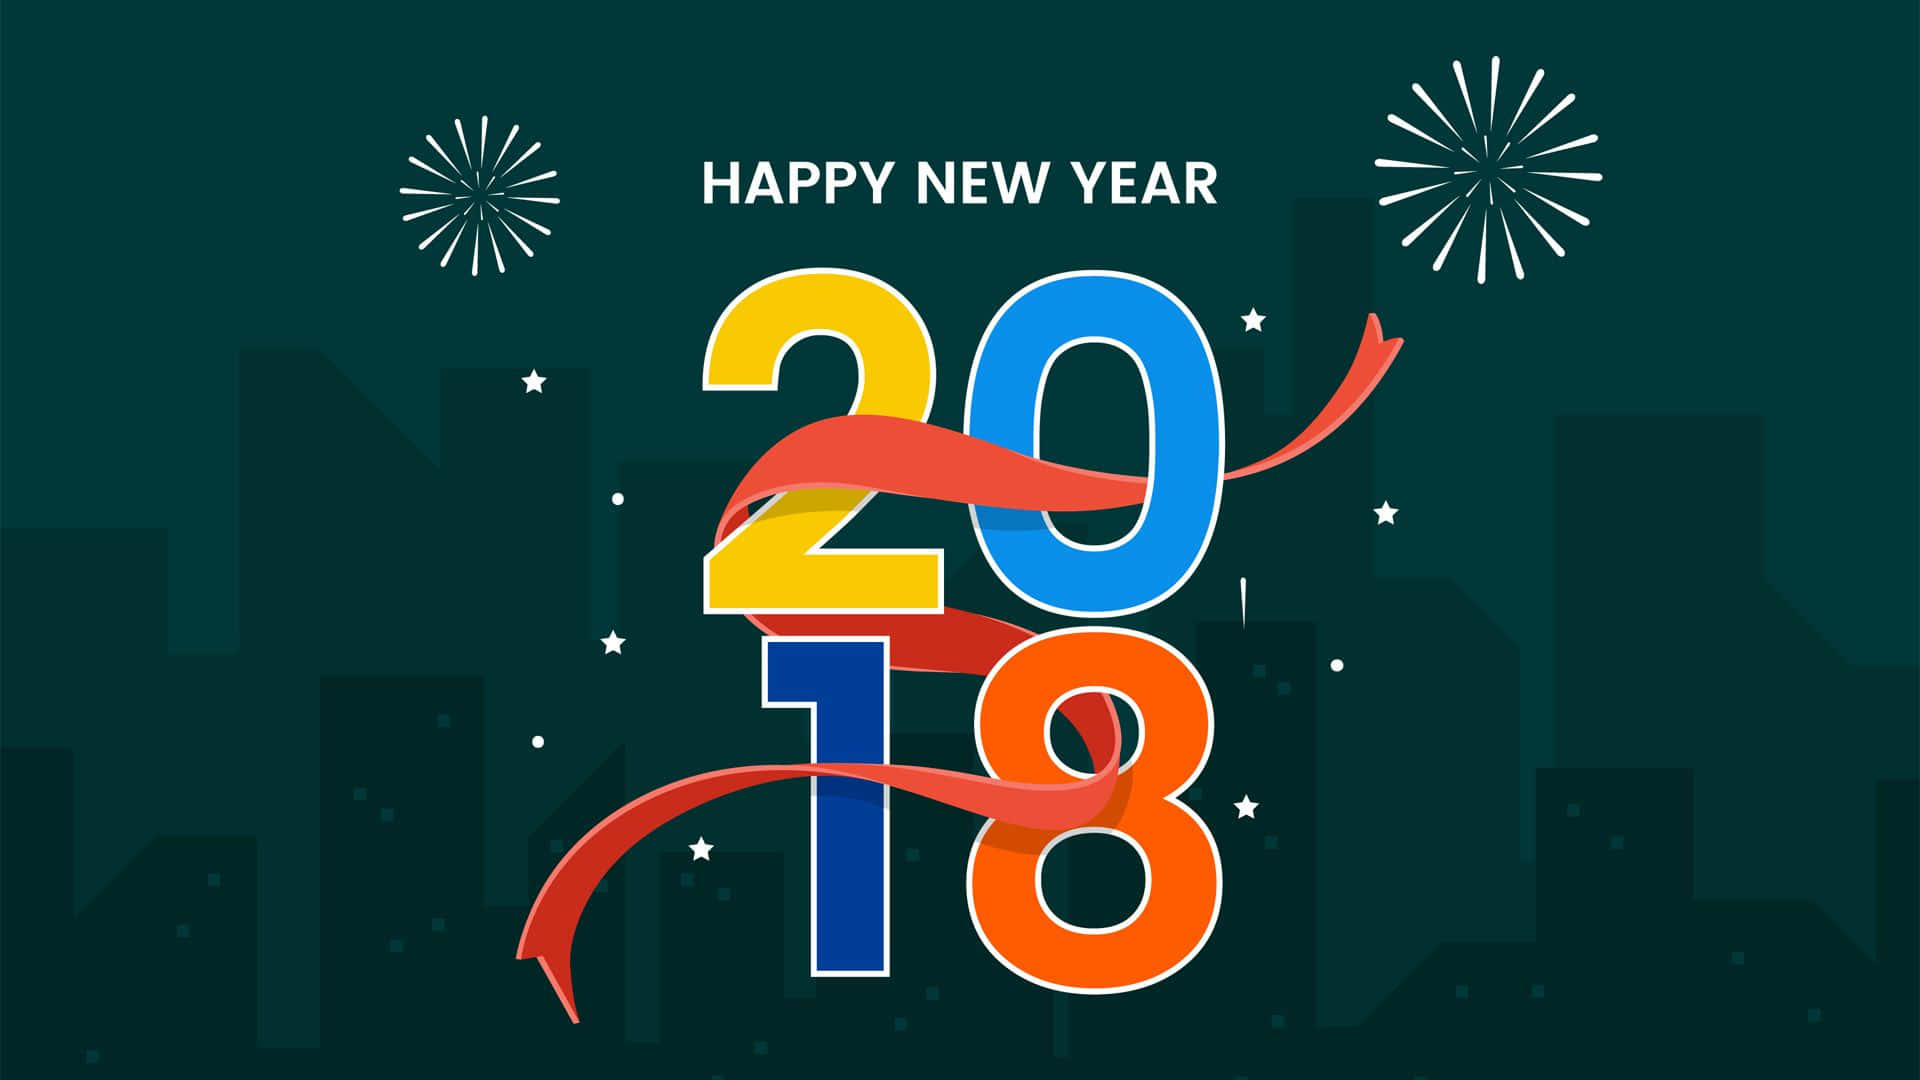 Benvenutial 2018: Un Anno Nuovo E Risplendente!